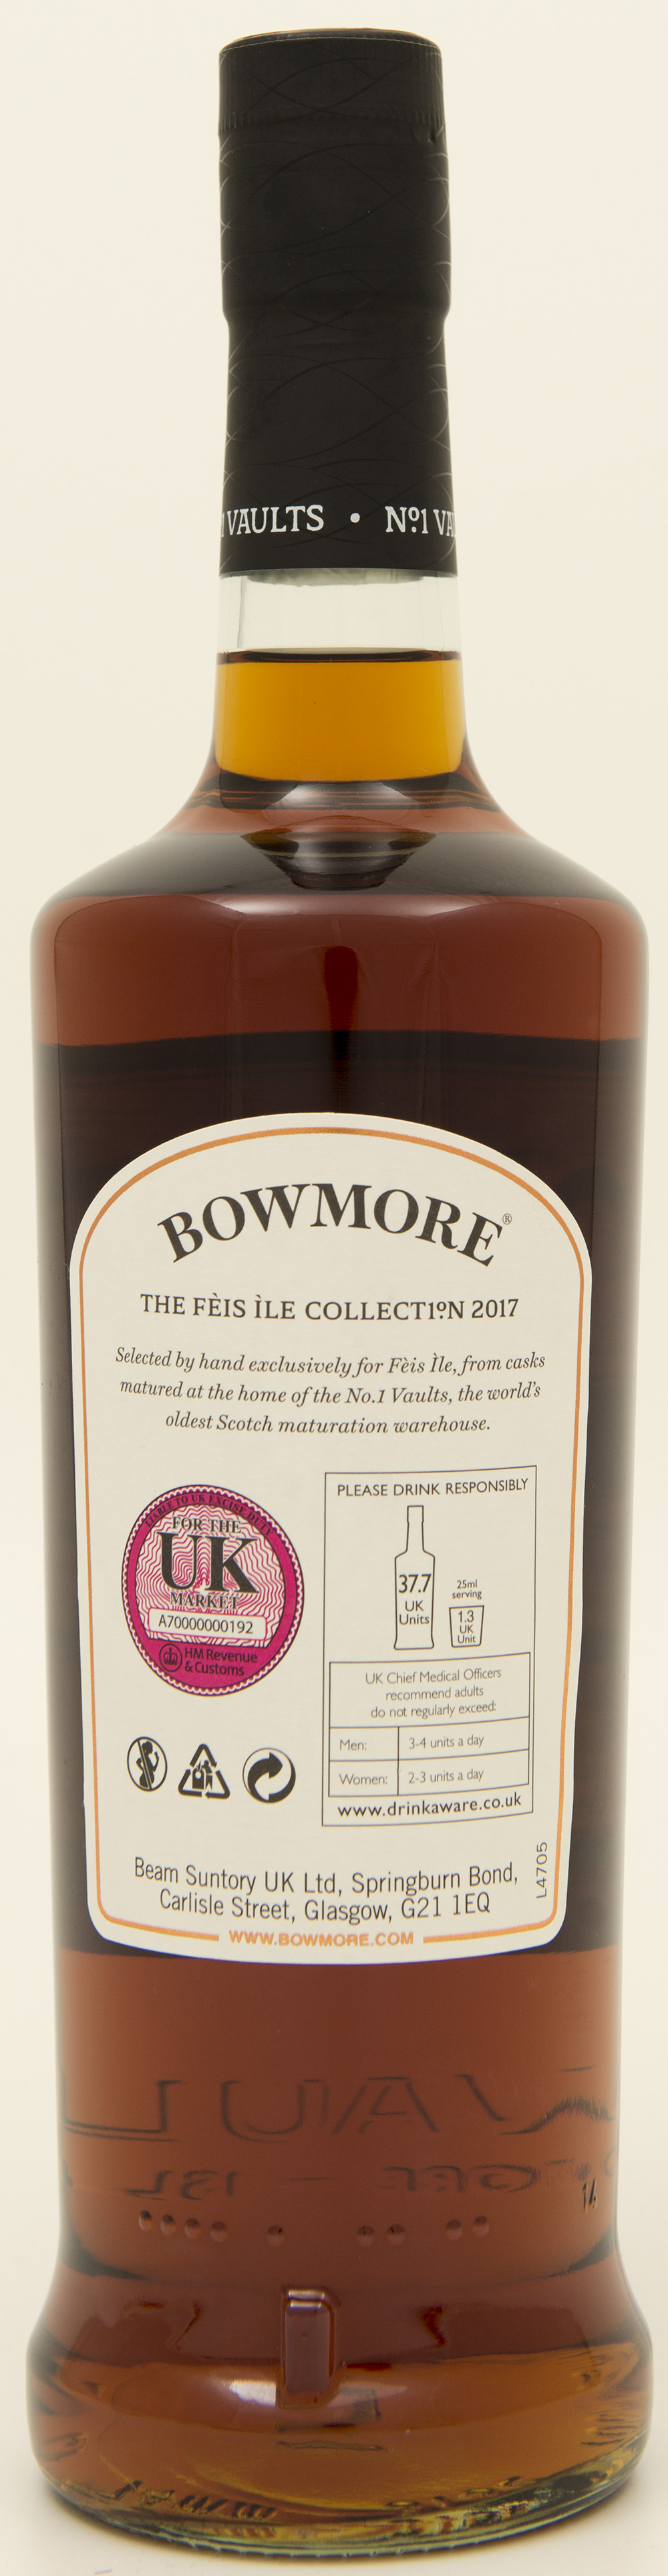 Billede: DSC_3218 - Bowmore 11 - Feis Isle 2017 - bottle back.jpg